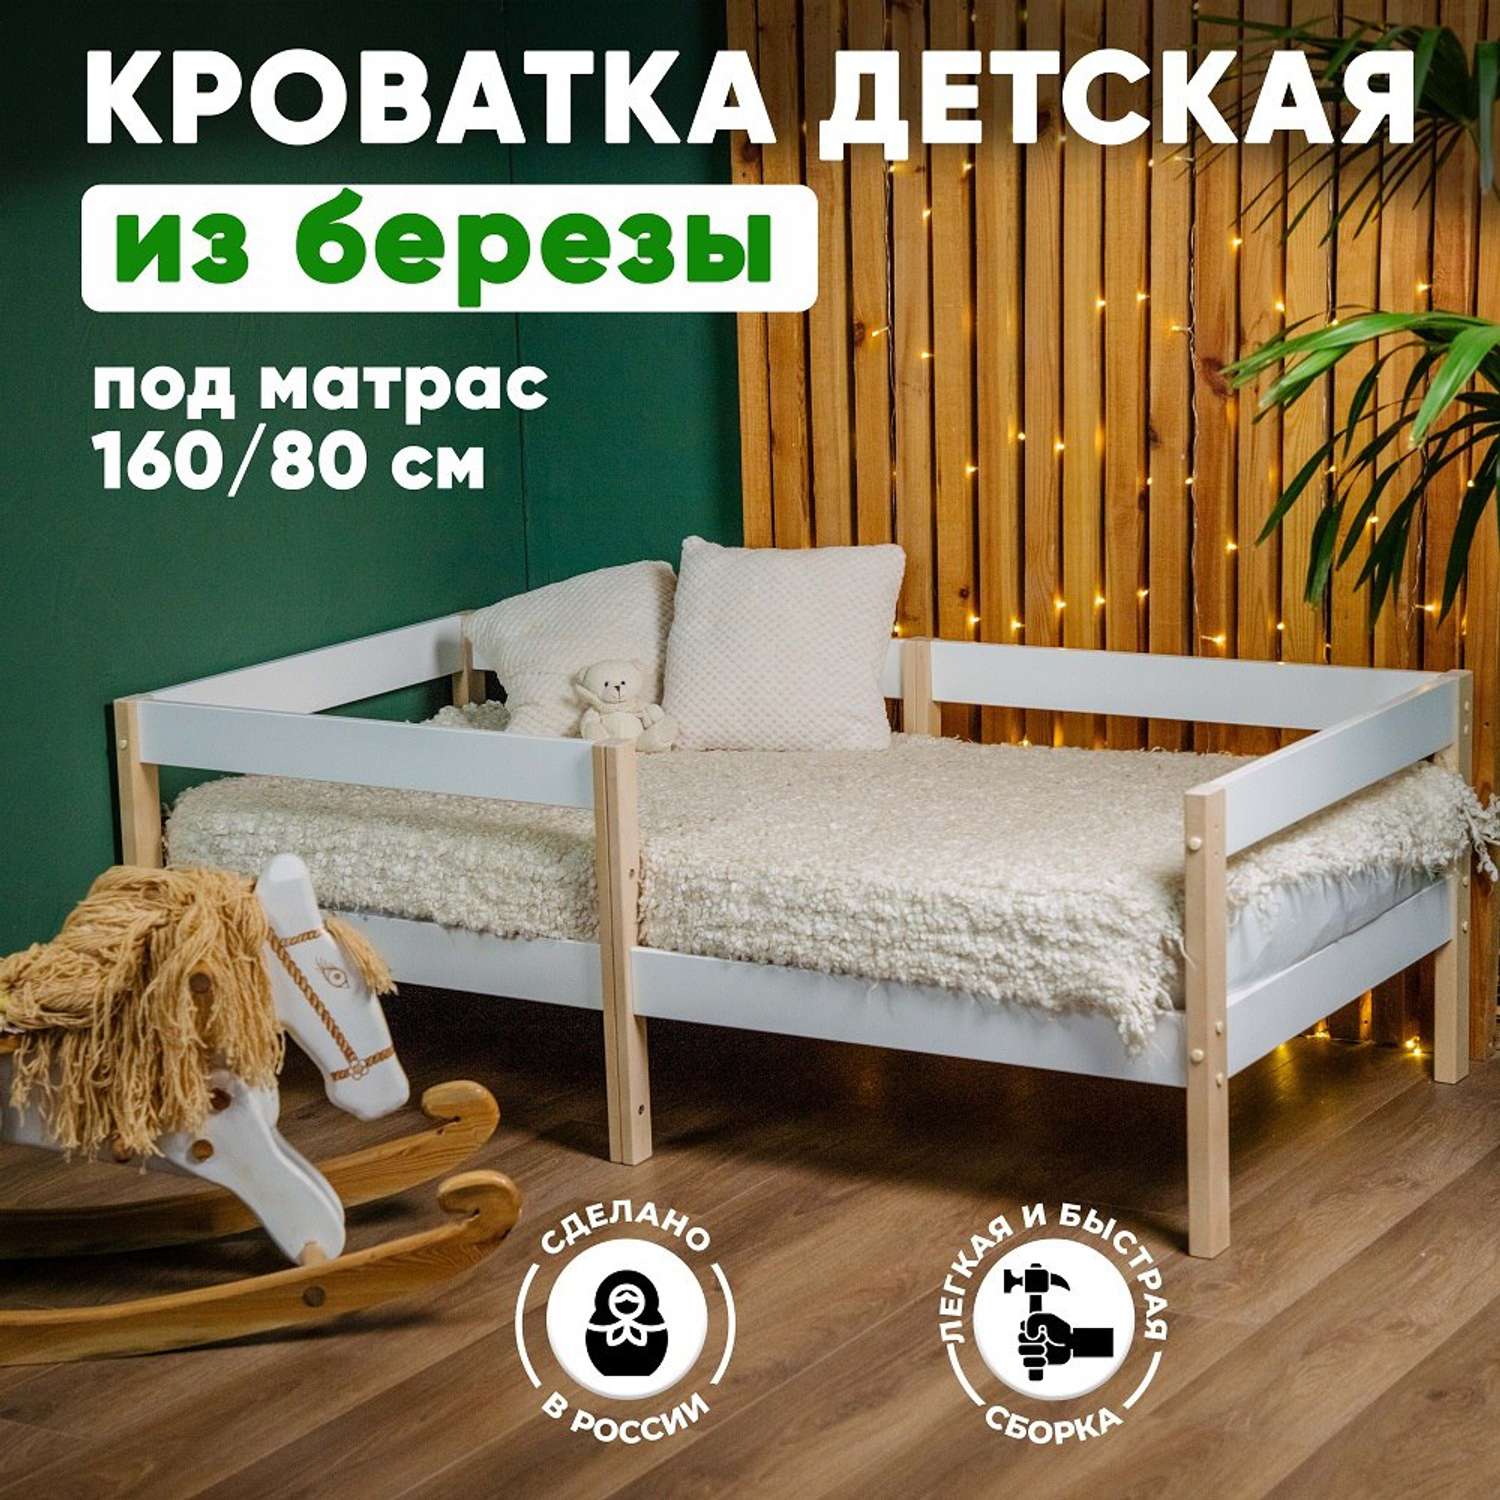 Кровать детская 160*80 Alatoys подростковая деревянная - фото 1